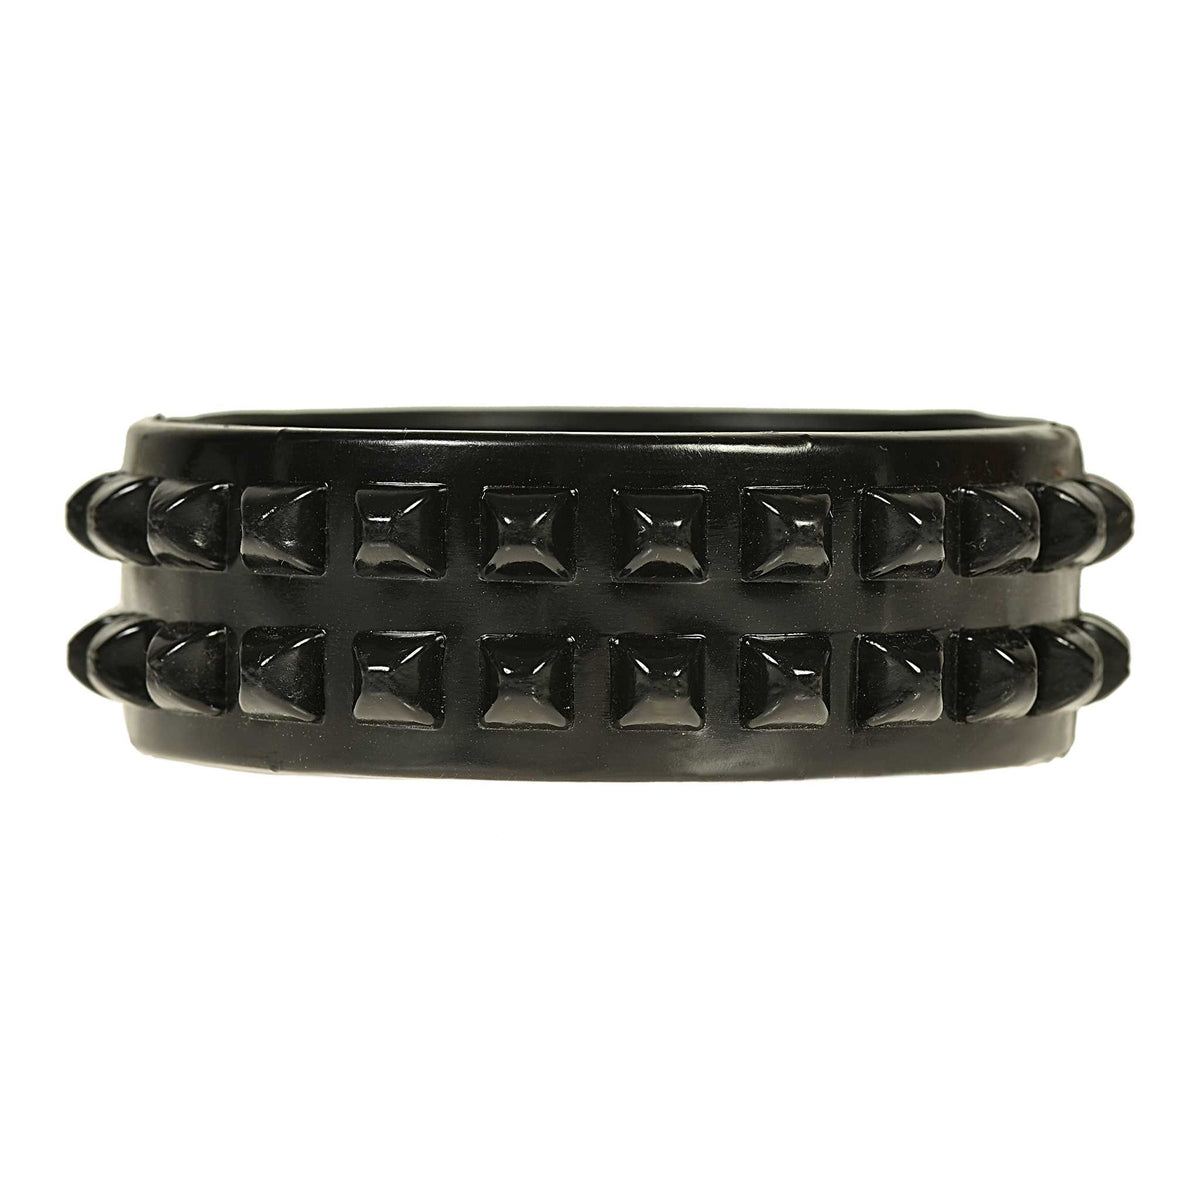 Black shiny jelly bracelets for the wrist